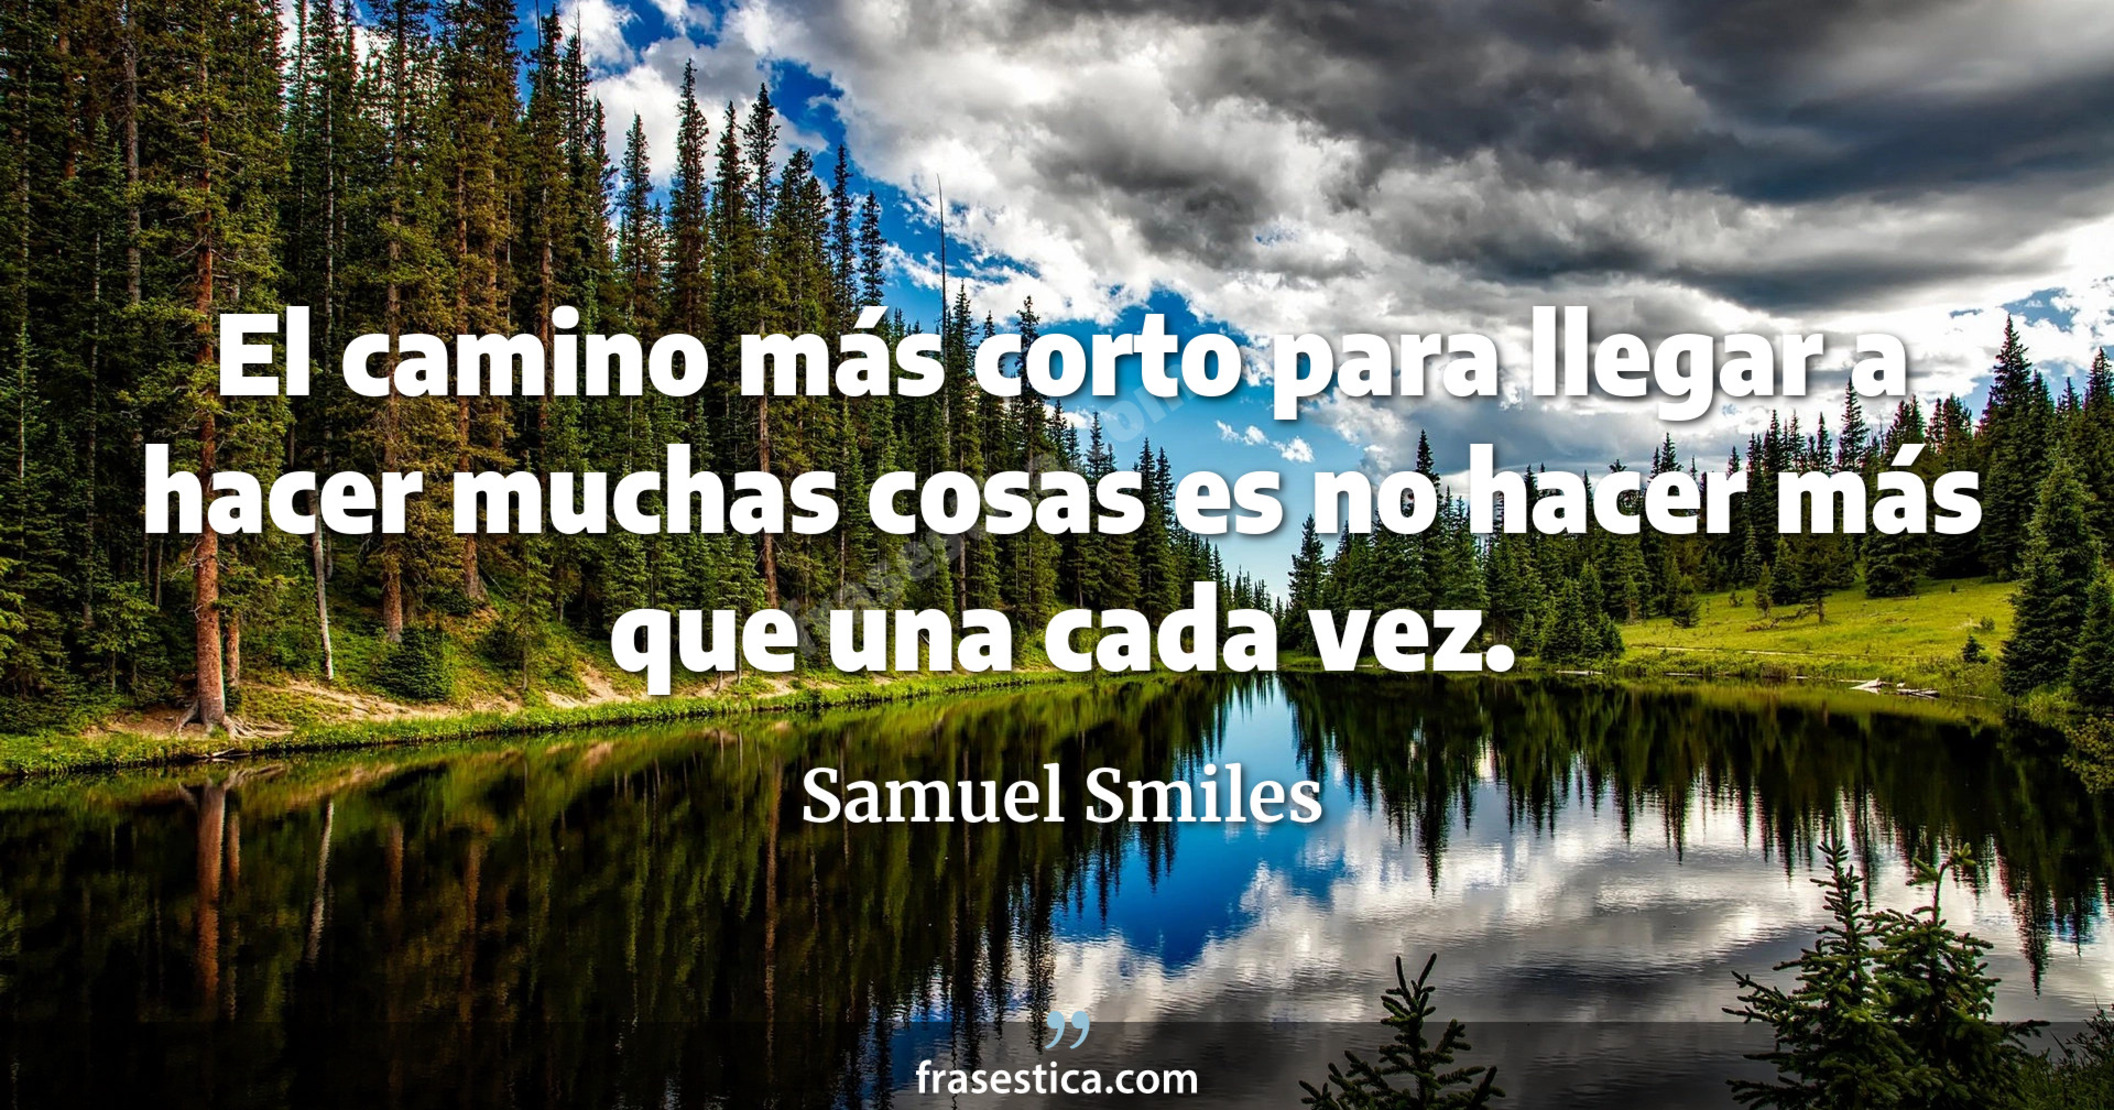 El camino más corto para llegar a hacer muchas cosas es no hacer más que una cada vez. - Samuel Smiles